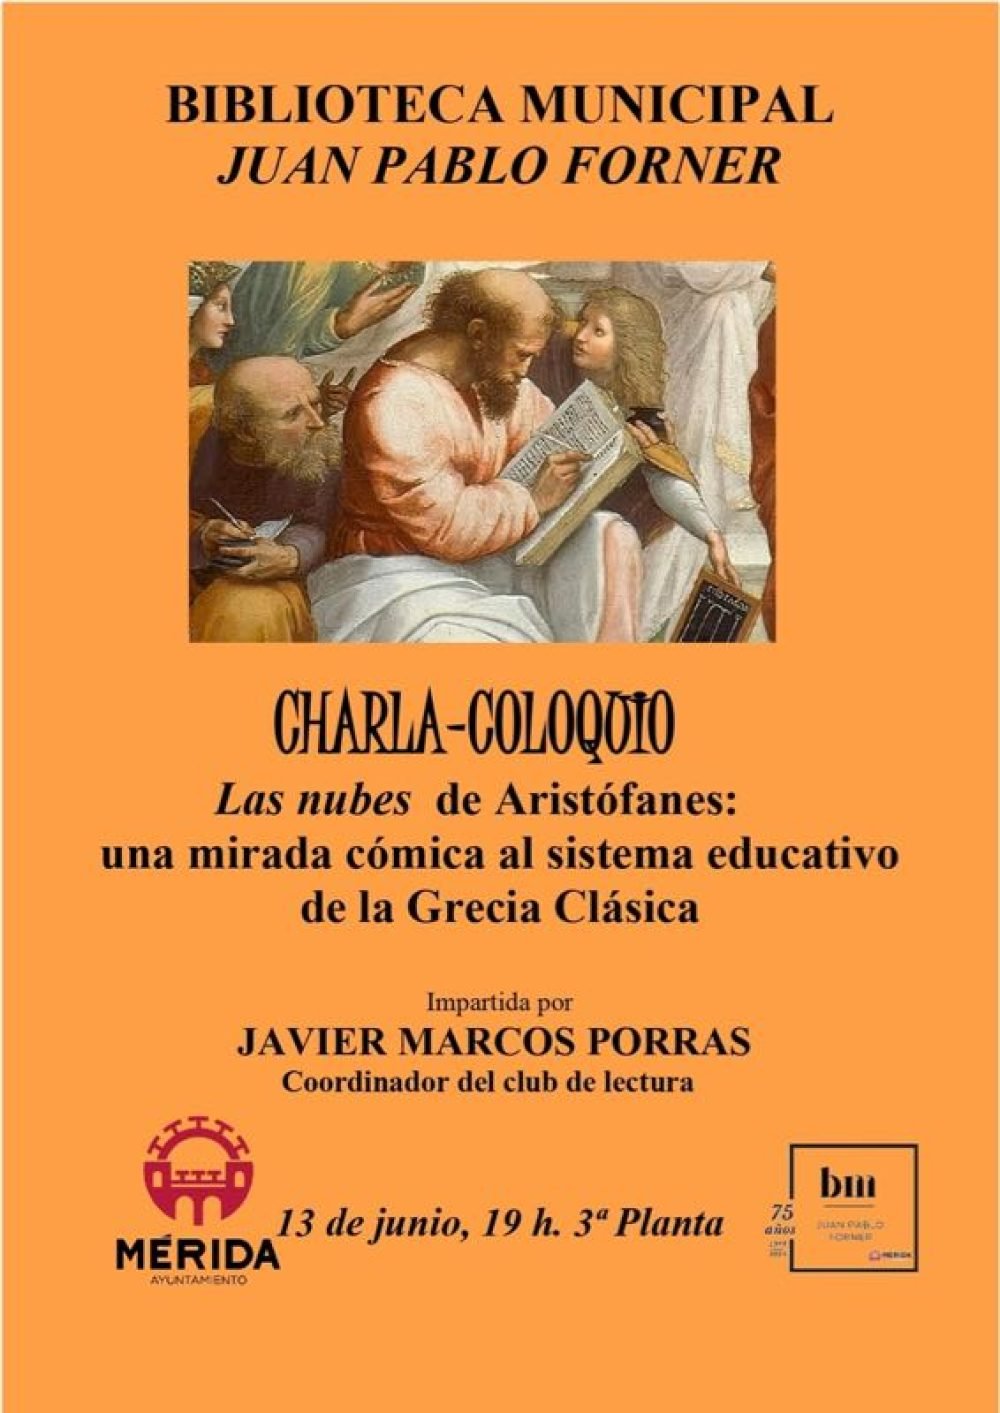 Charla-Coloquio ‘Las nubes de Aristófanes’ de Javier Marcos Porras